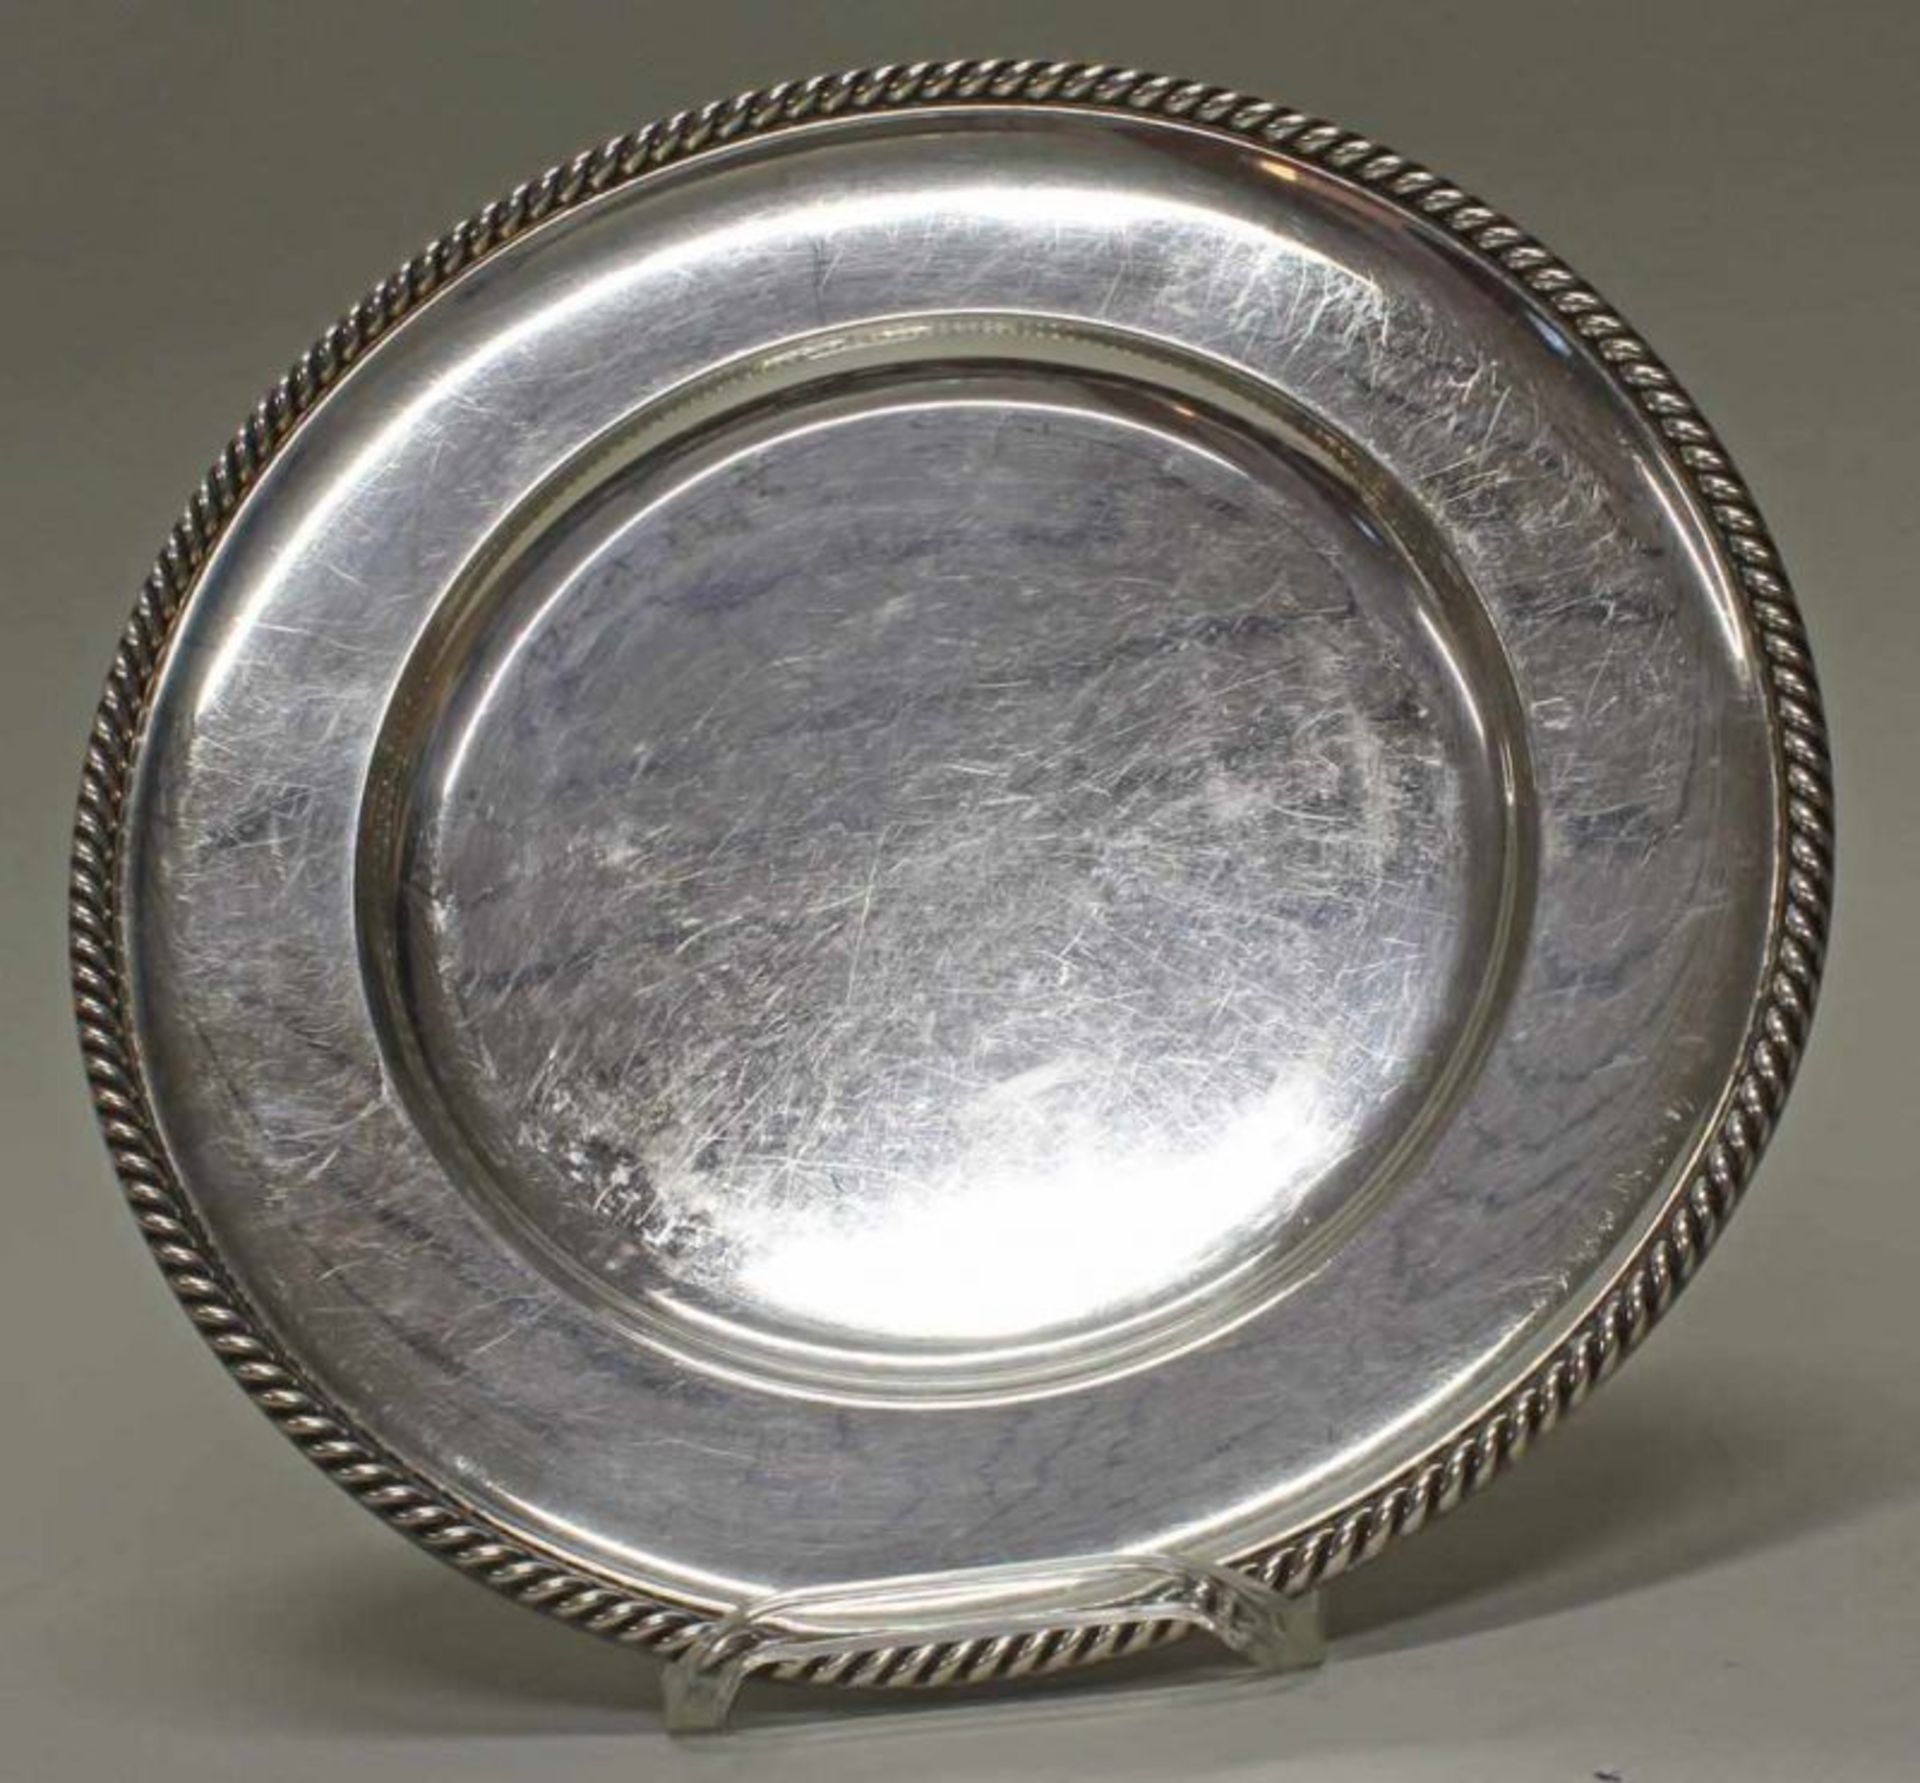 Platte, Silber 835, Kordelrand, ø 28 cm, ca. 452 g 20.00 % buyer's premium on the hammer price 19.00